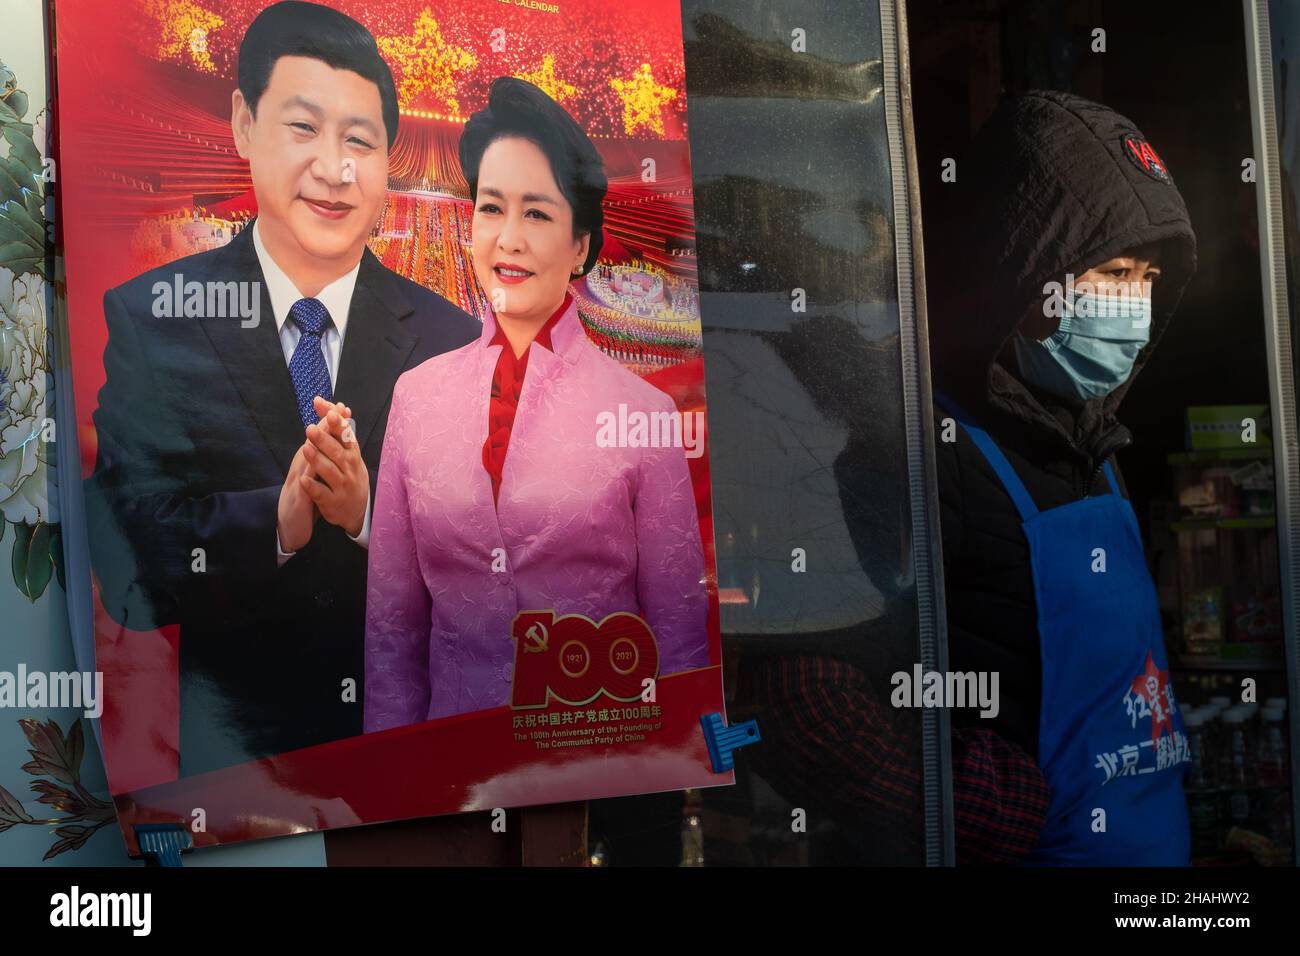 Calendario del muro de 2022 con fotos del presidente chino Xi Jinping y su esposa Peng Liyuan como portada. Foto de stock